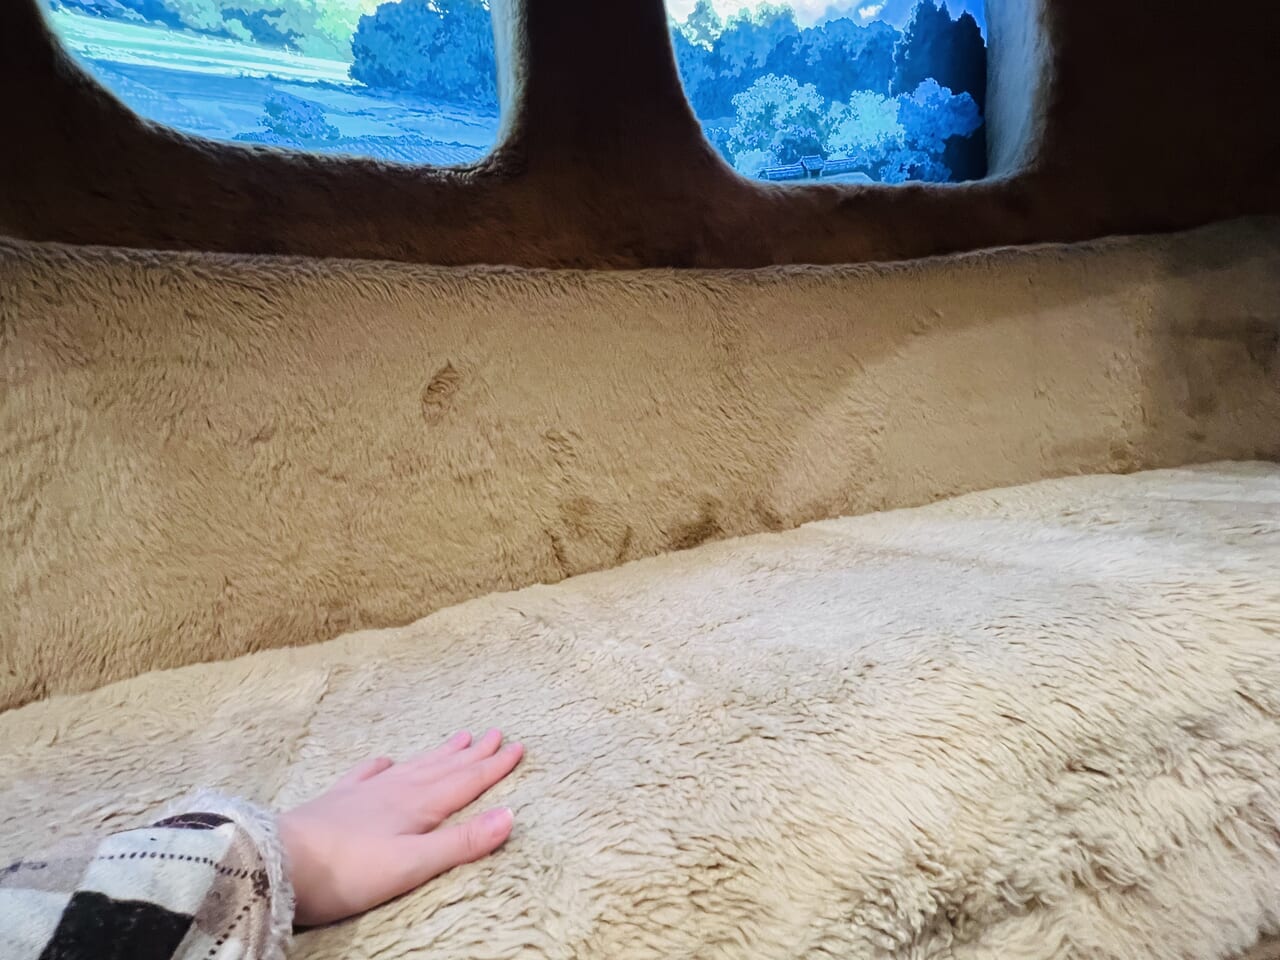 「ジブリパークとジブリ展」で展示されている巨大「ネコバス」の座席